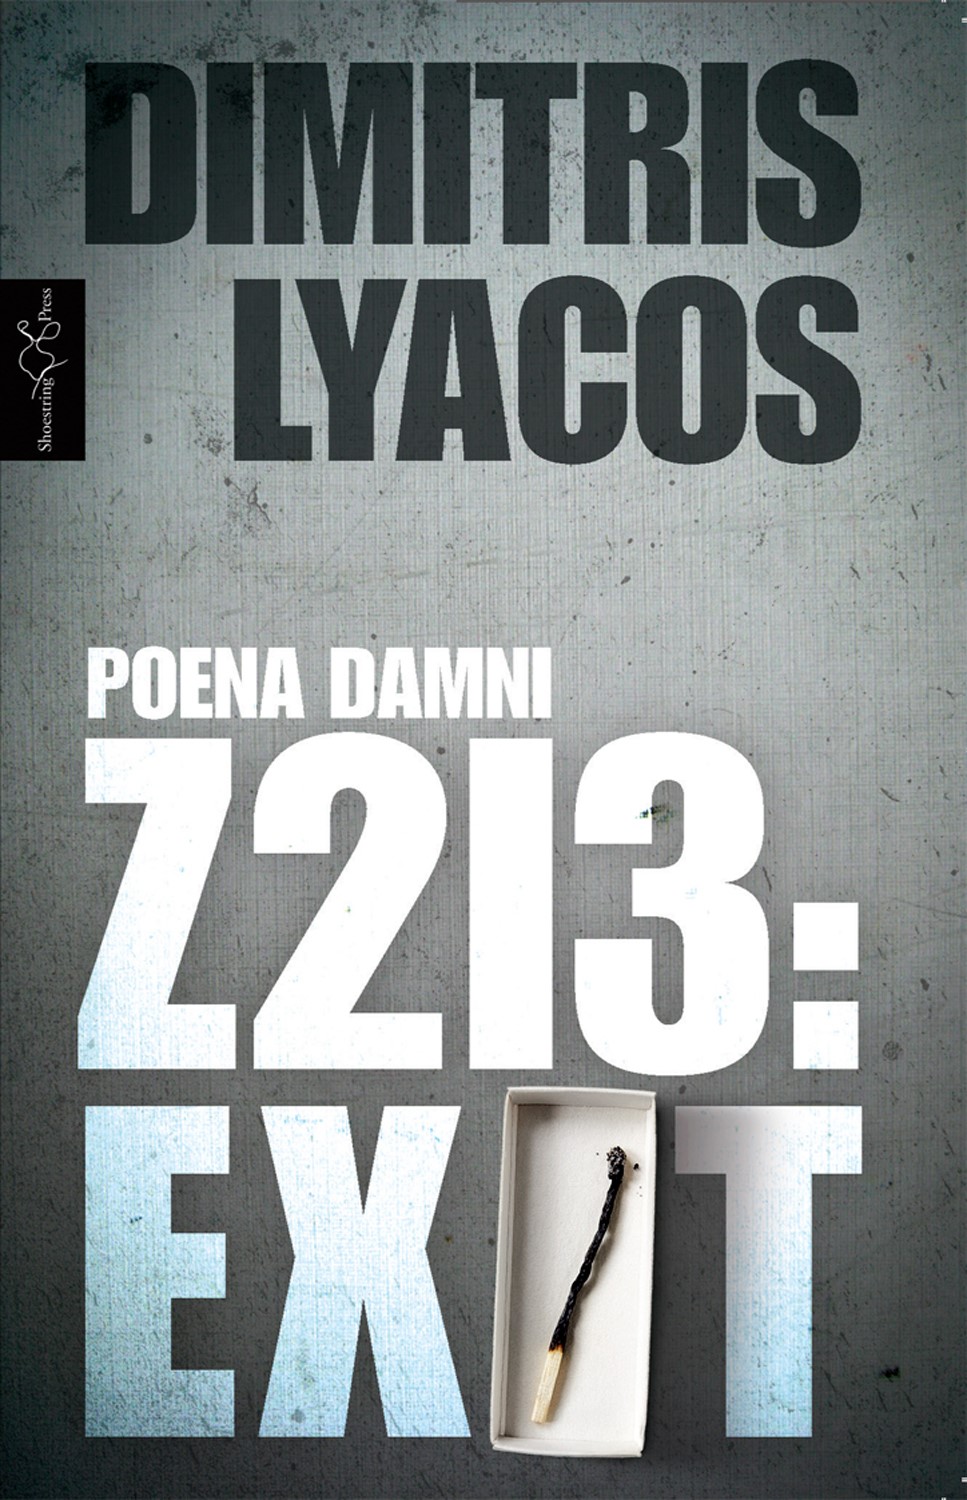 Z213 by Dimitris Lyacos